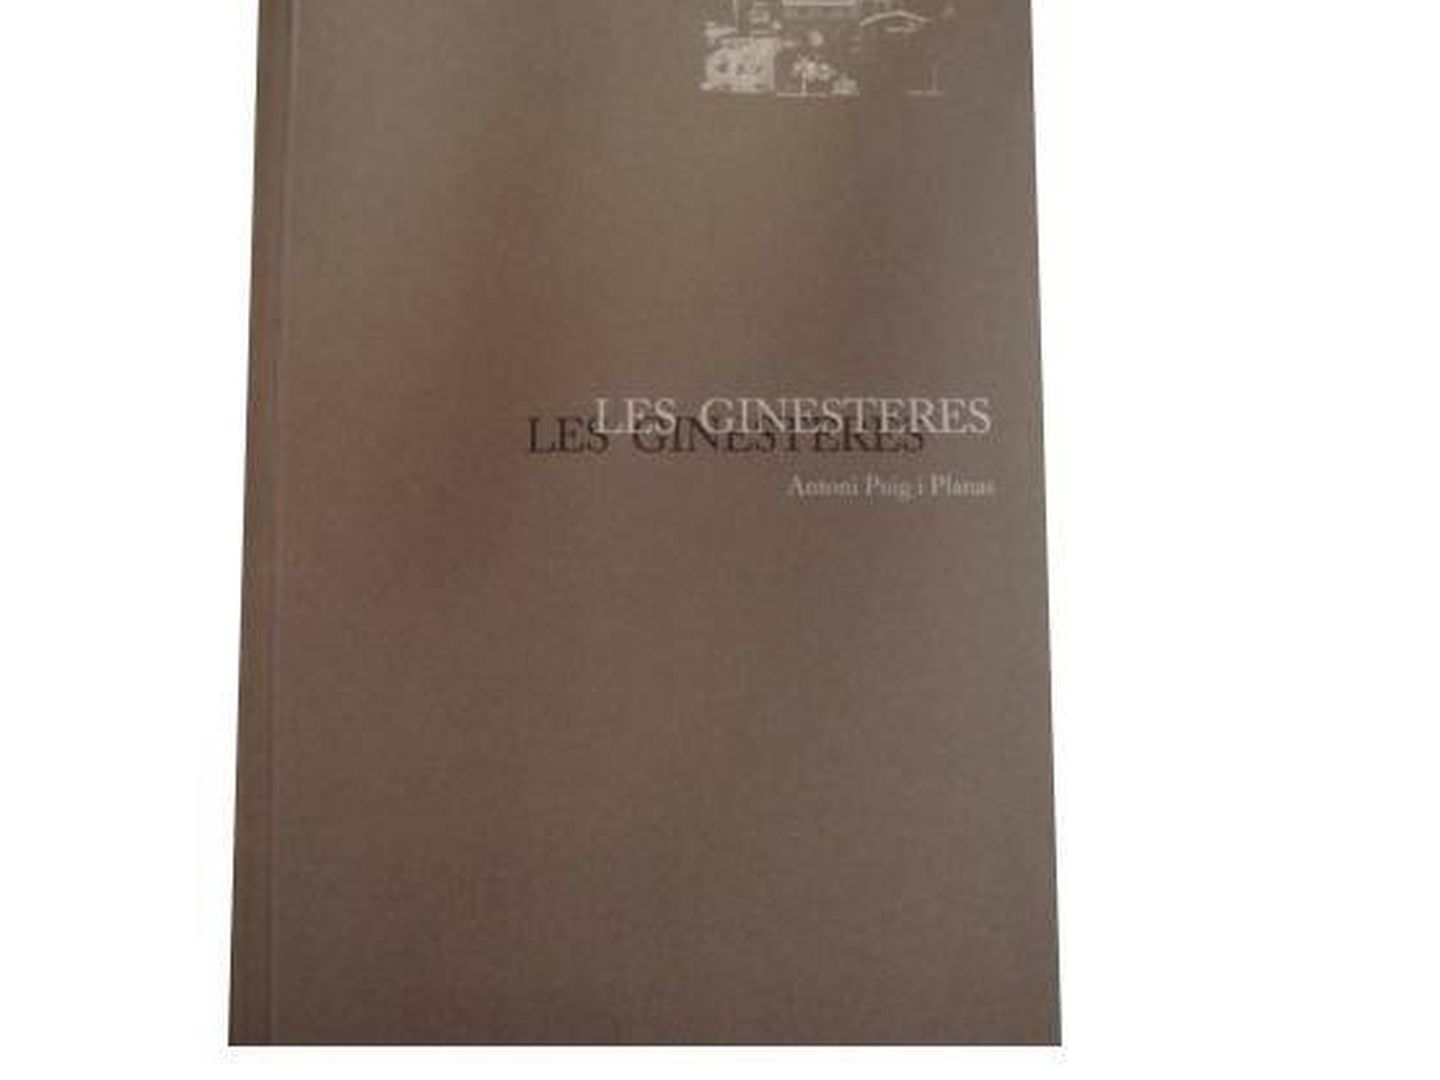 Portada del libro 'Les Ginesteres', escrito por Antonio Puig Planas.